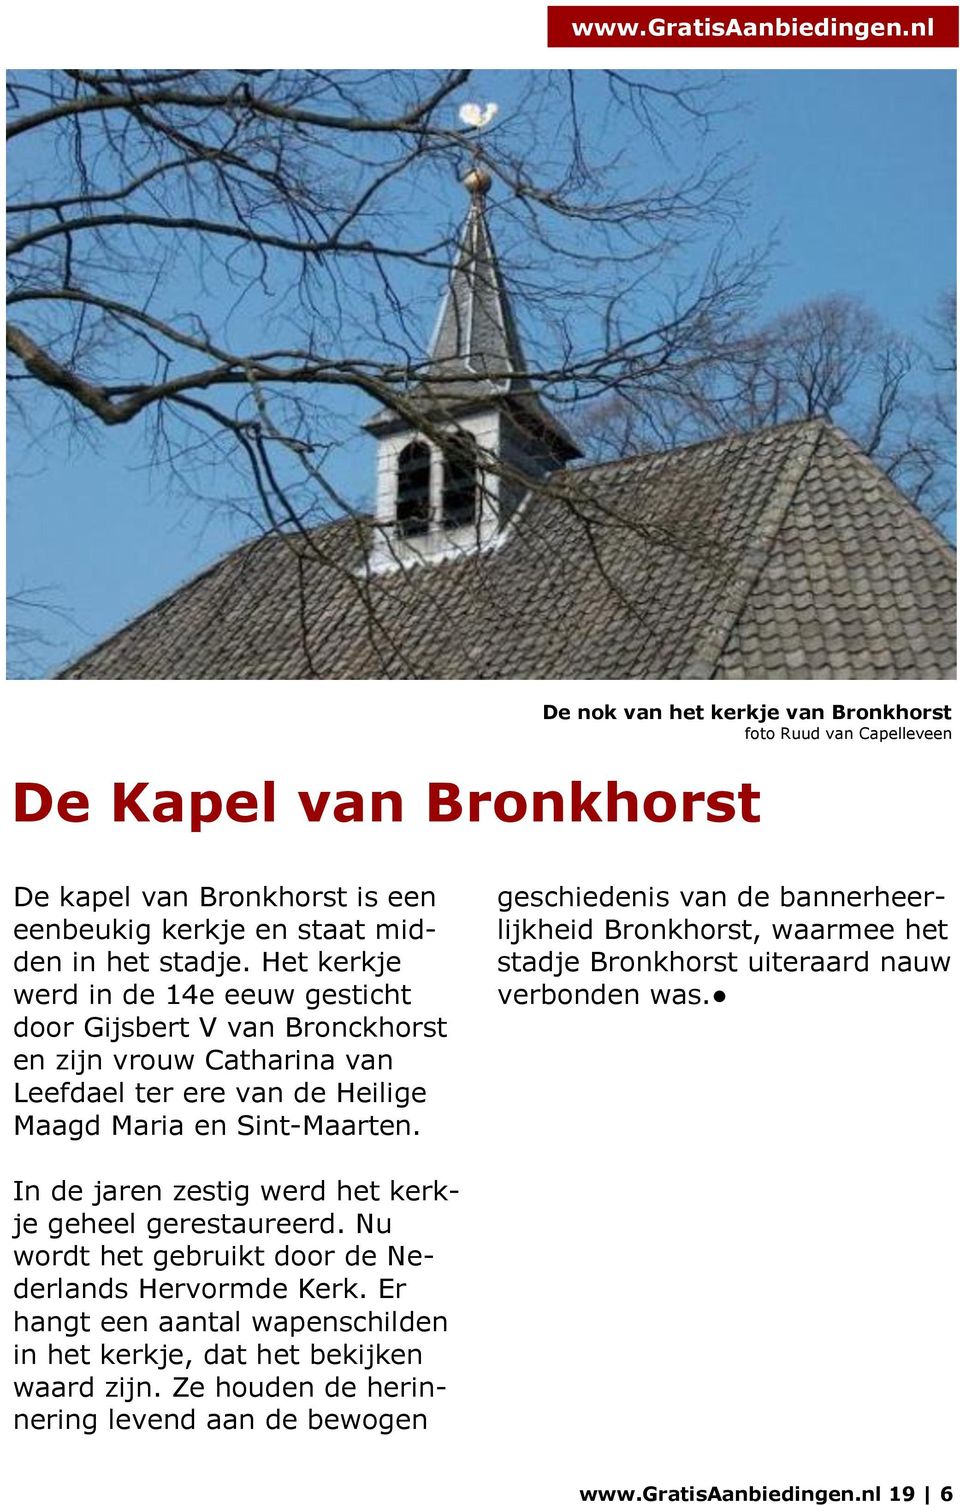 geschiedenis van de bannerheerlijkheid Bronkhorst, waarmee het stadje Bronkhorst uiteraard nauw verbonden was. In de jaren zestig werd het kerkje geheel gerestaureerd.